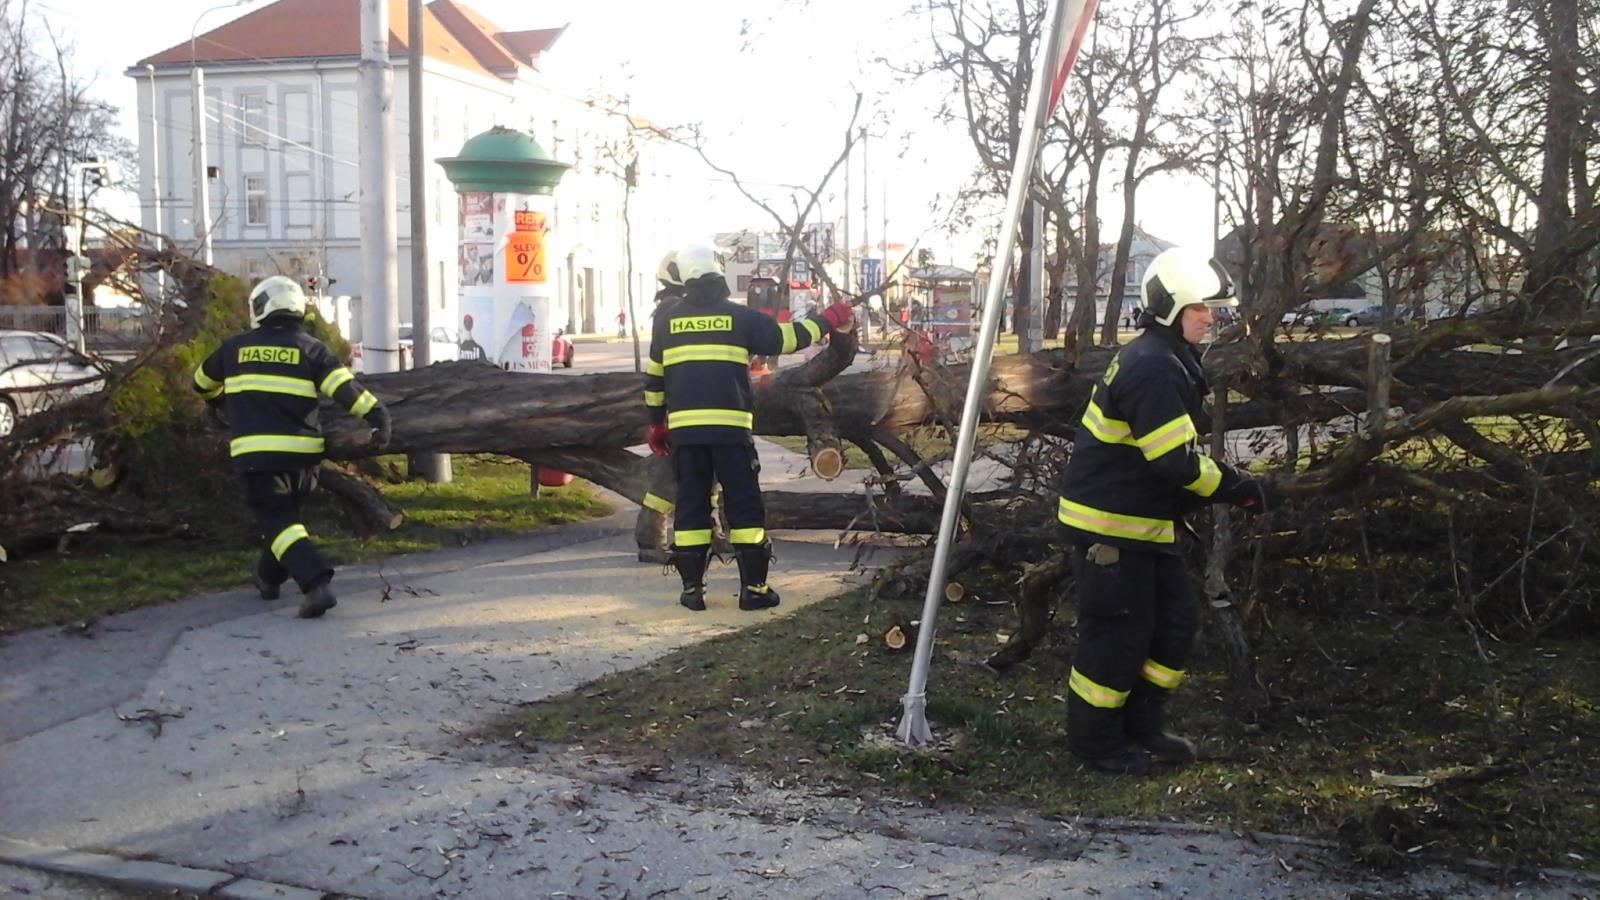 Stromy, České Budějovice - 11. 3. 2019 (1).jpg